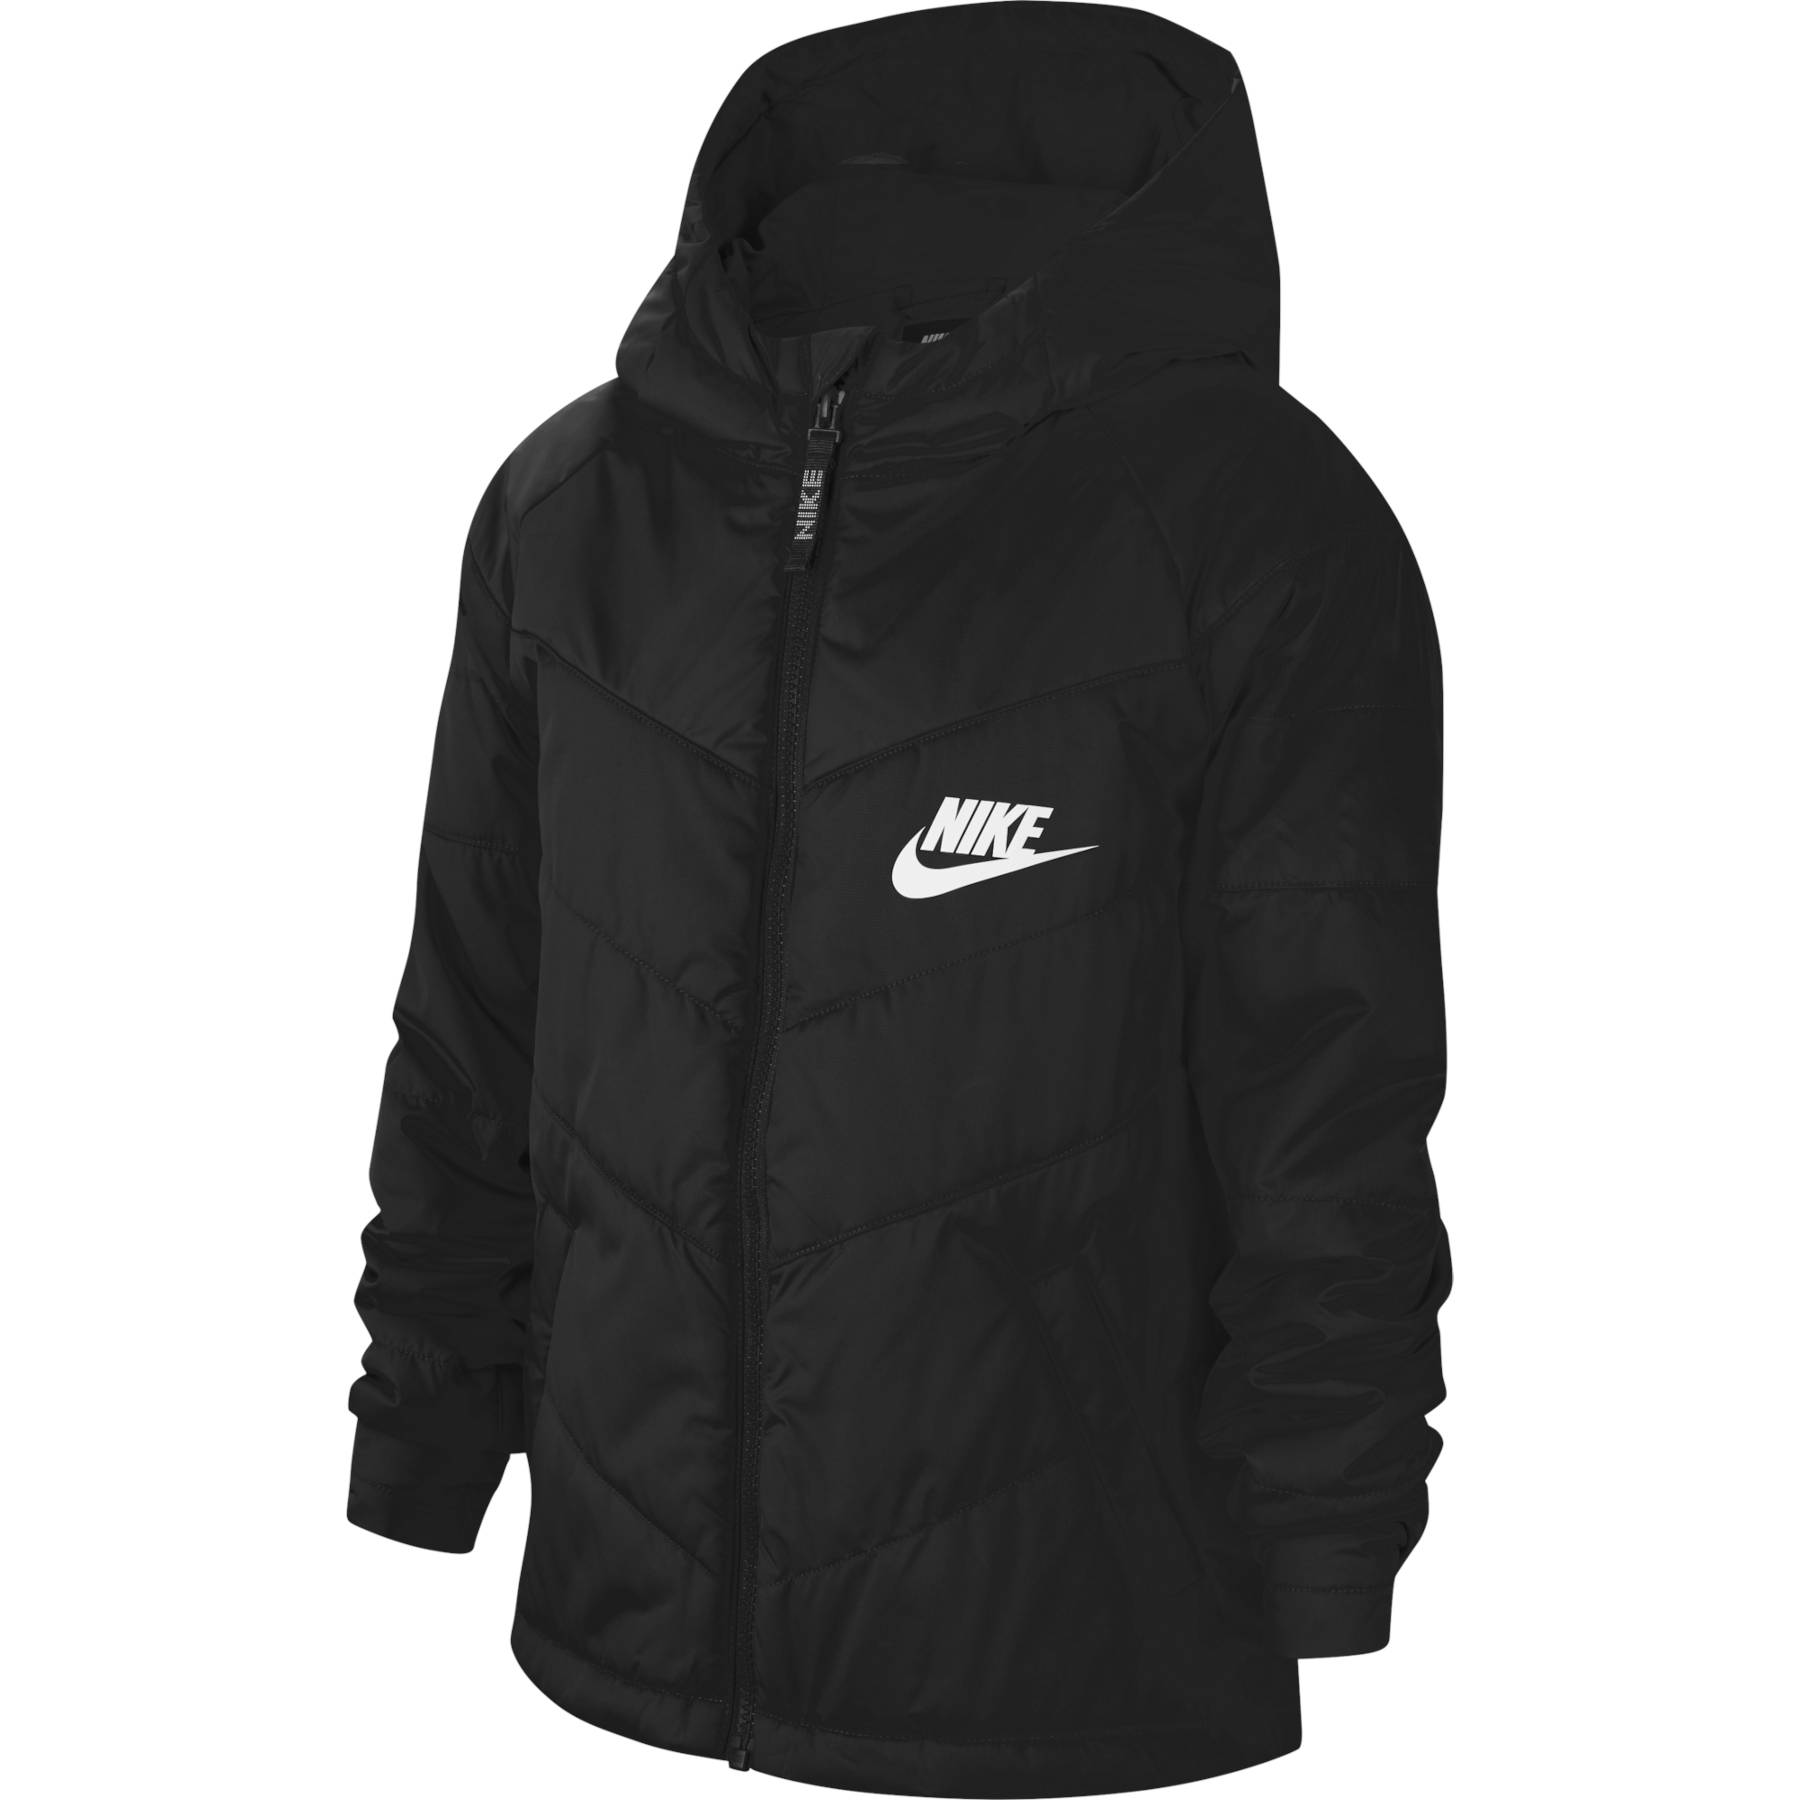 Productfoto van Nike Sportswear Jas Kinderen - black/black/black/white CU9157-010